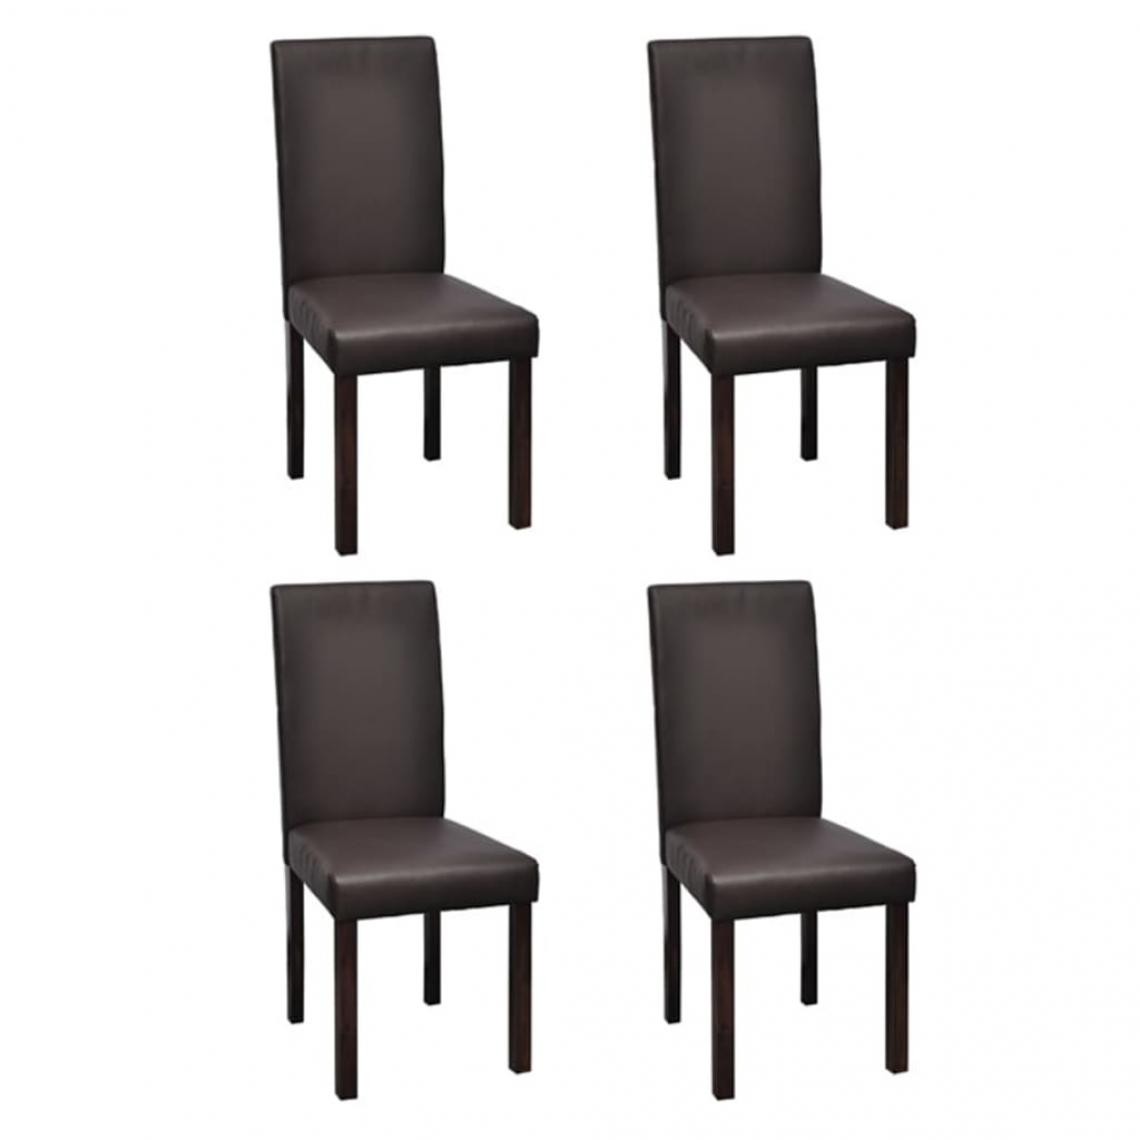 Decoshop26 - Lot de 4 chaises de salle à manger cuisine style classique en similicuir marron pieds en bois CDS021701 - Chaises